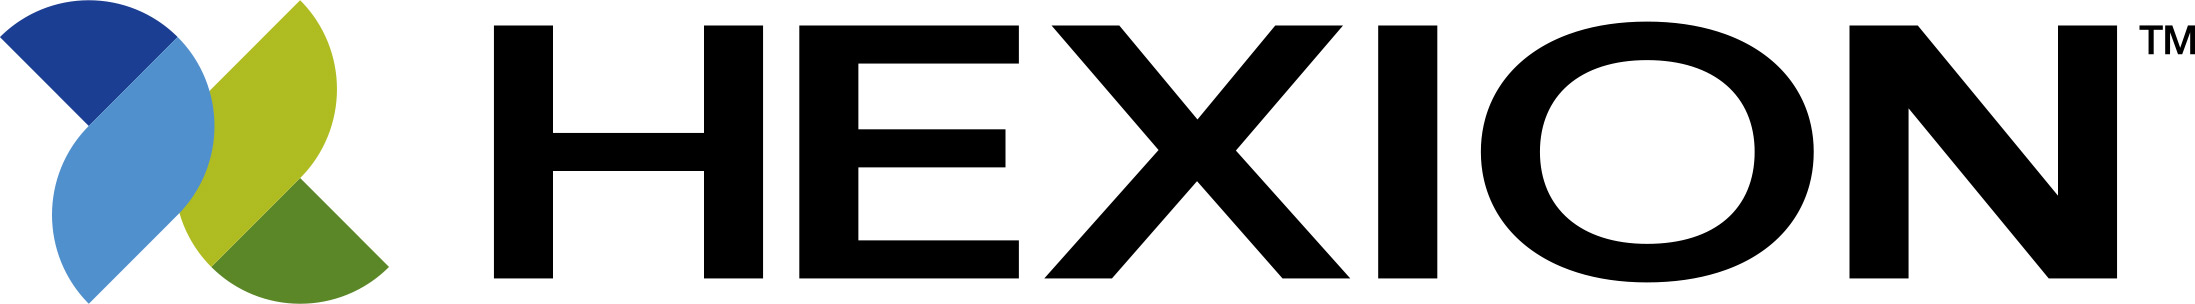 Exxon-clienti